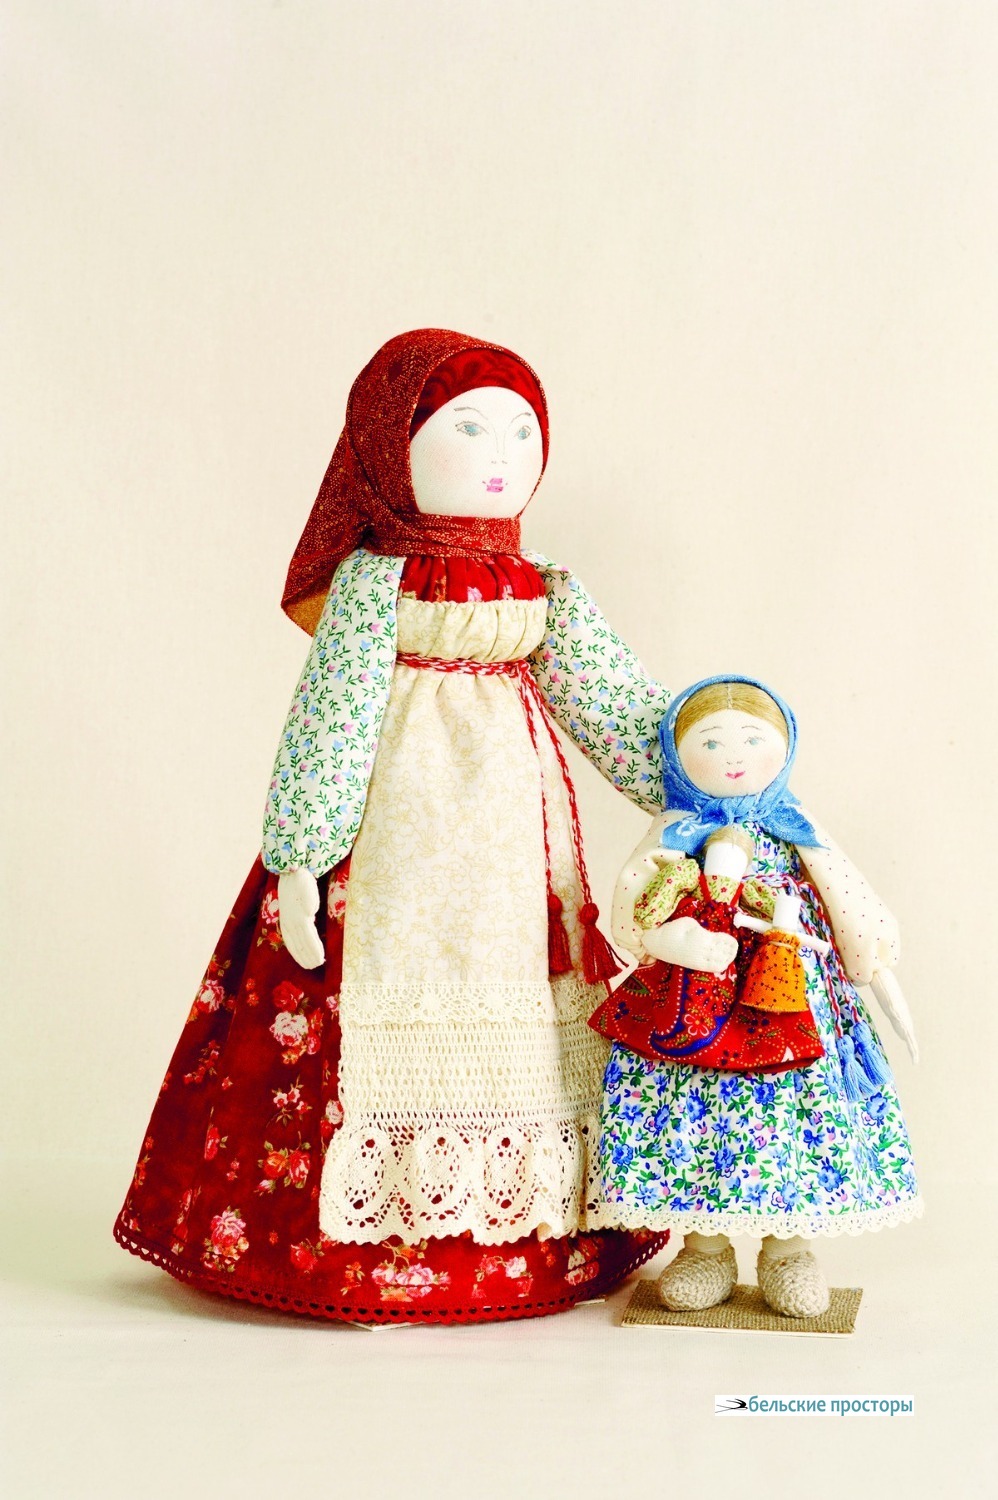 Доченька моя. 2018, текстильная кукла